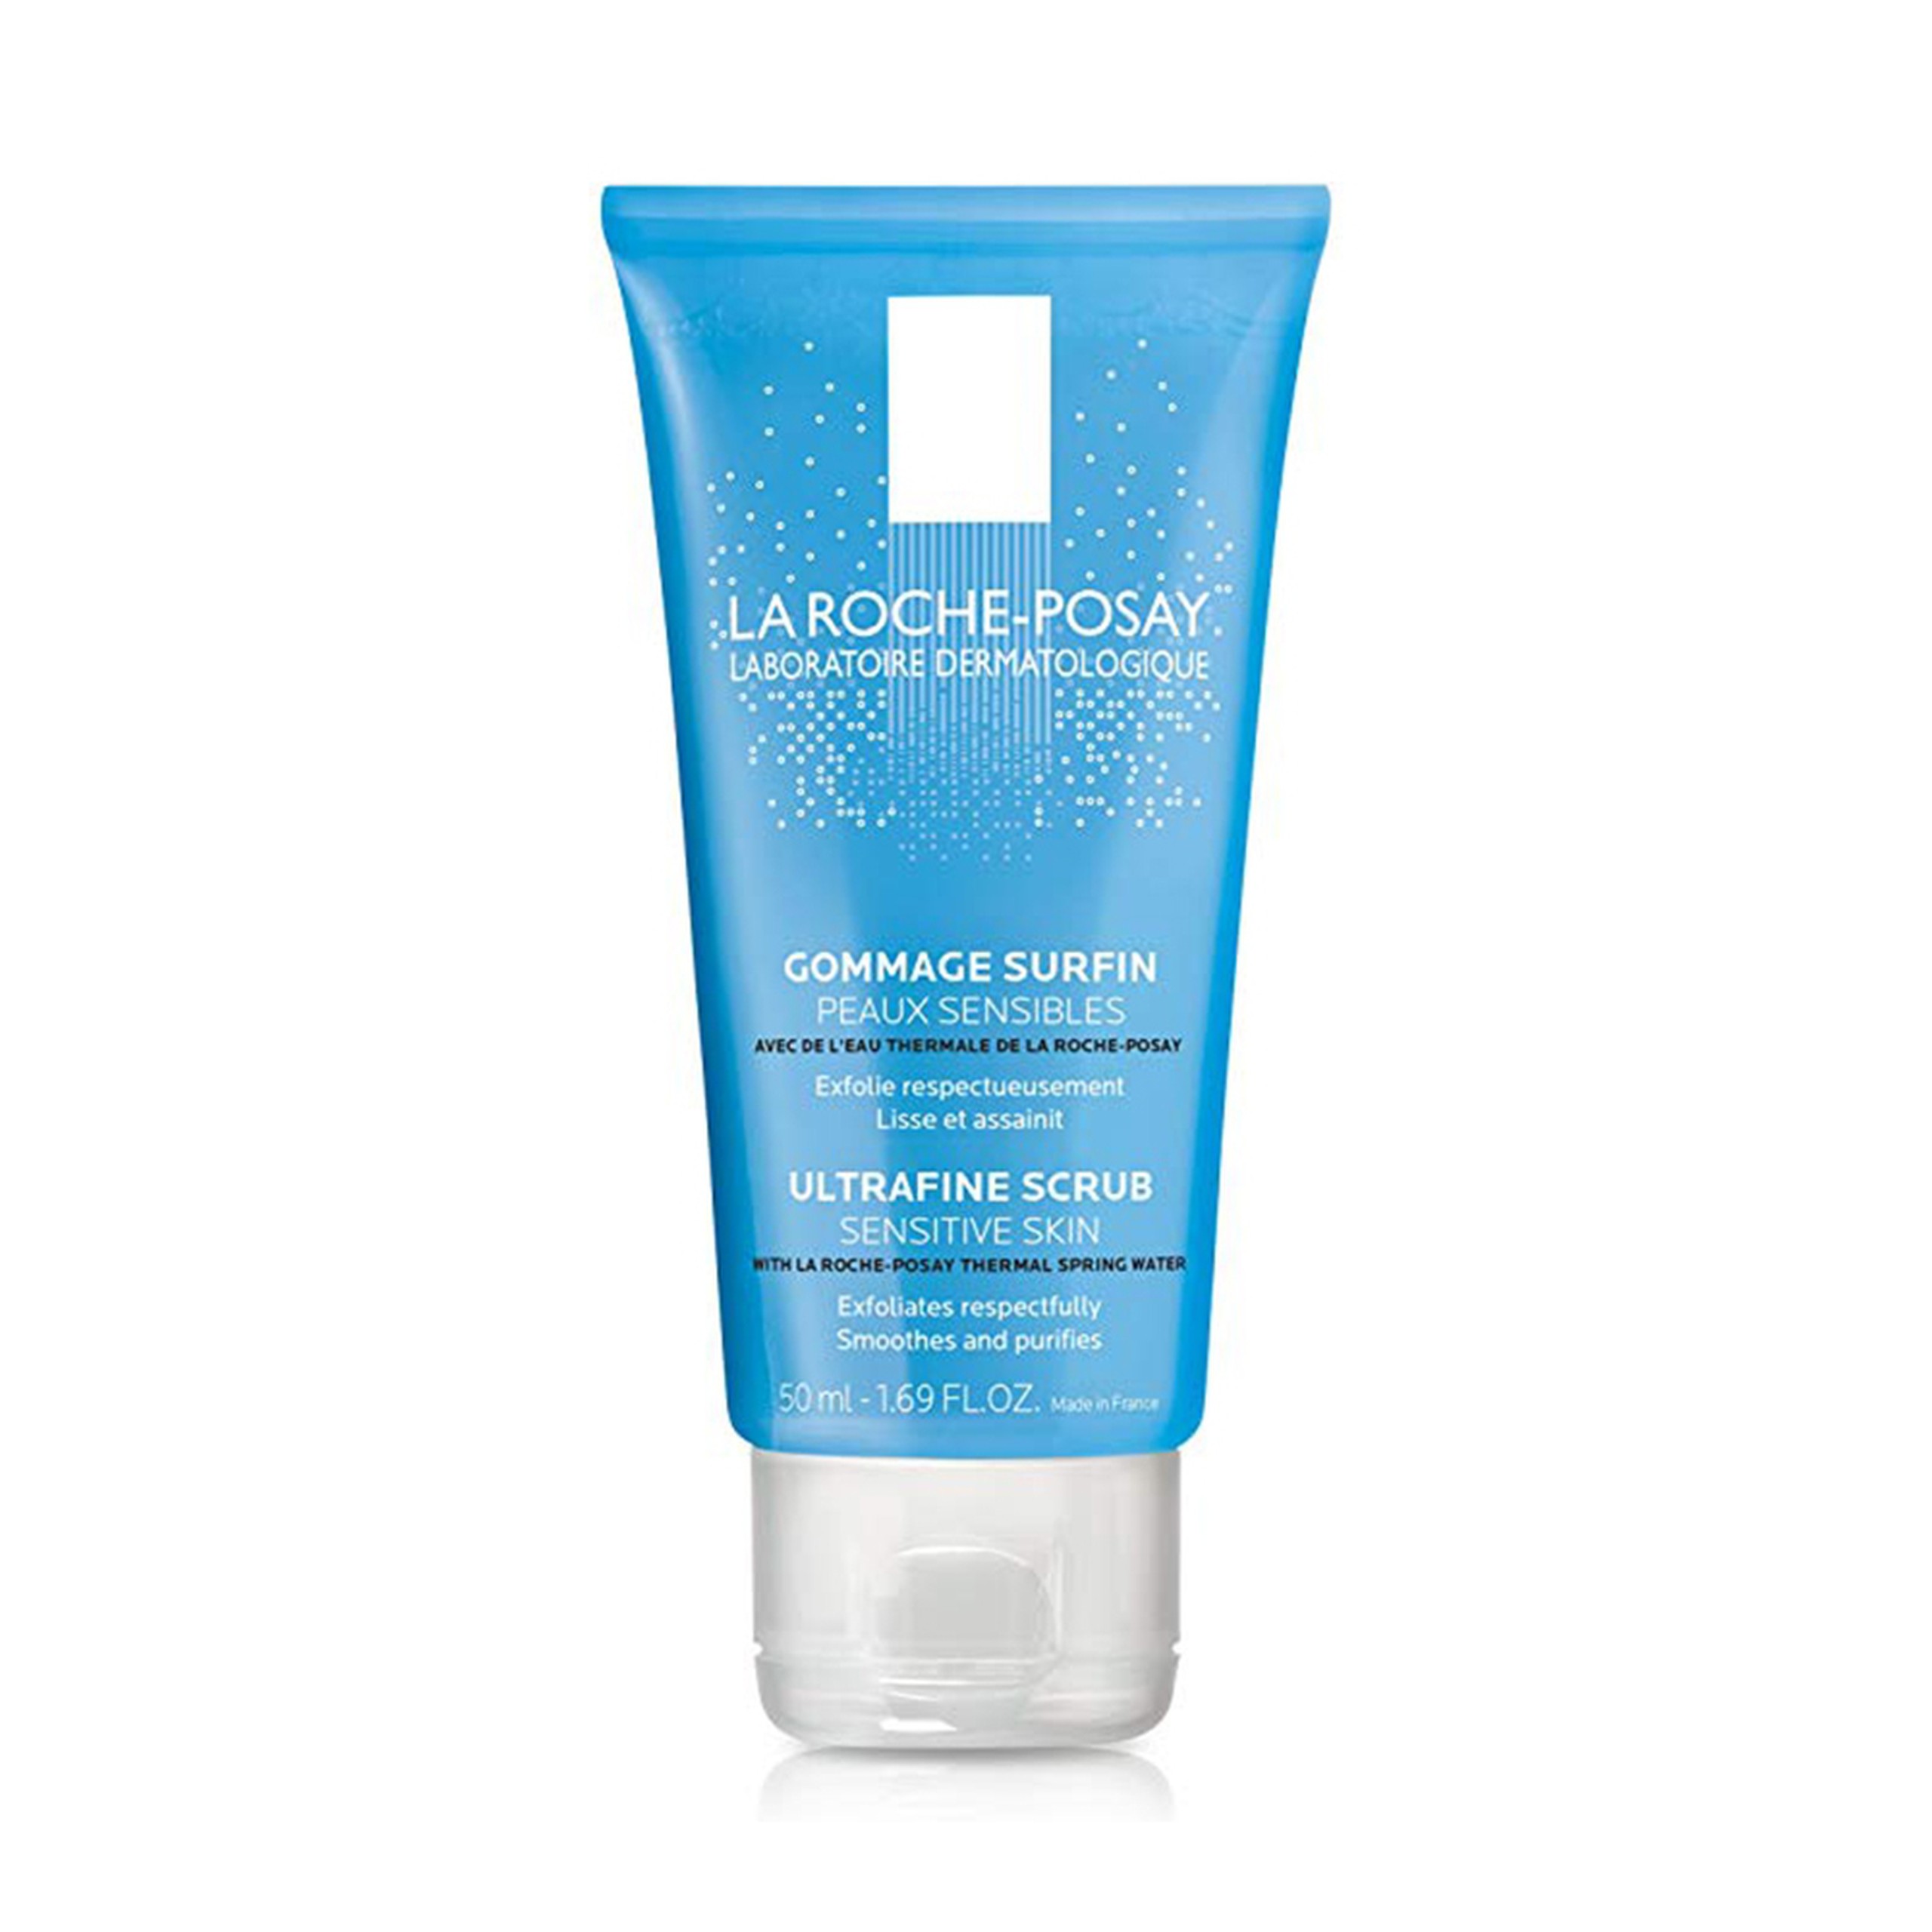 Gel La Roche-Posay Ultrafine Scrub Sensitive Skin hỗ trợ loại bỏ bã nhờn, tế bào chết (50ml)